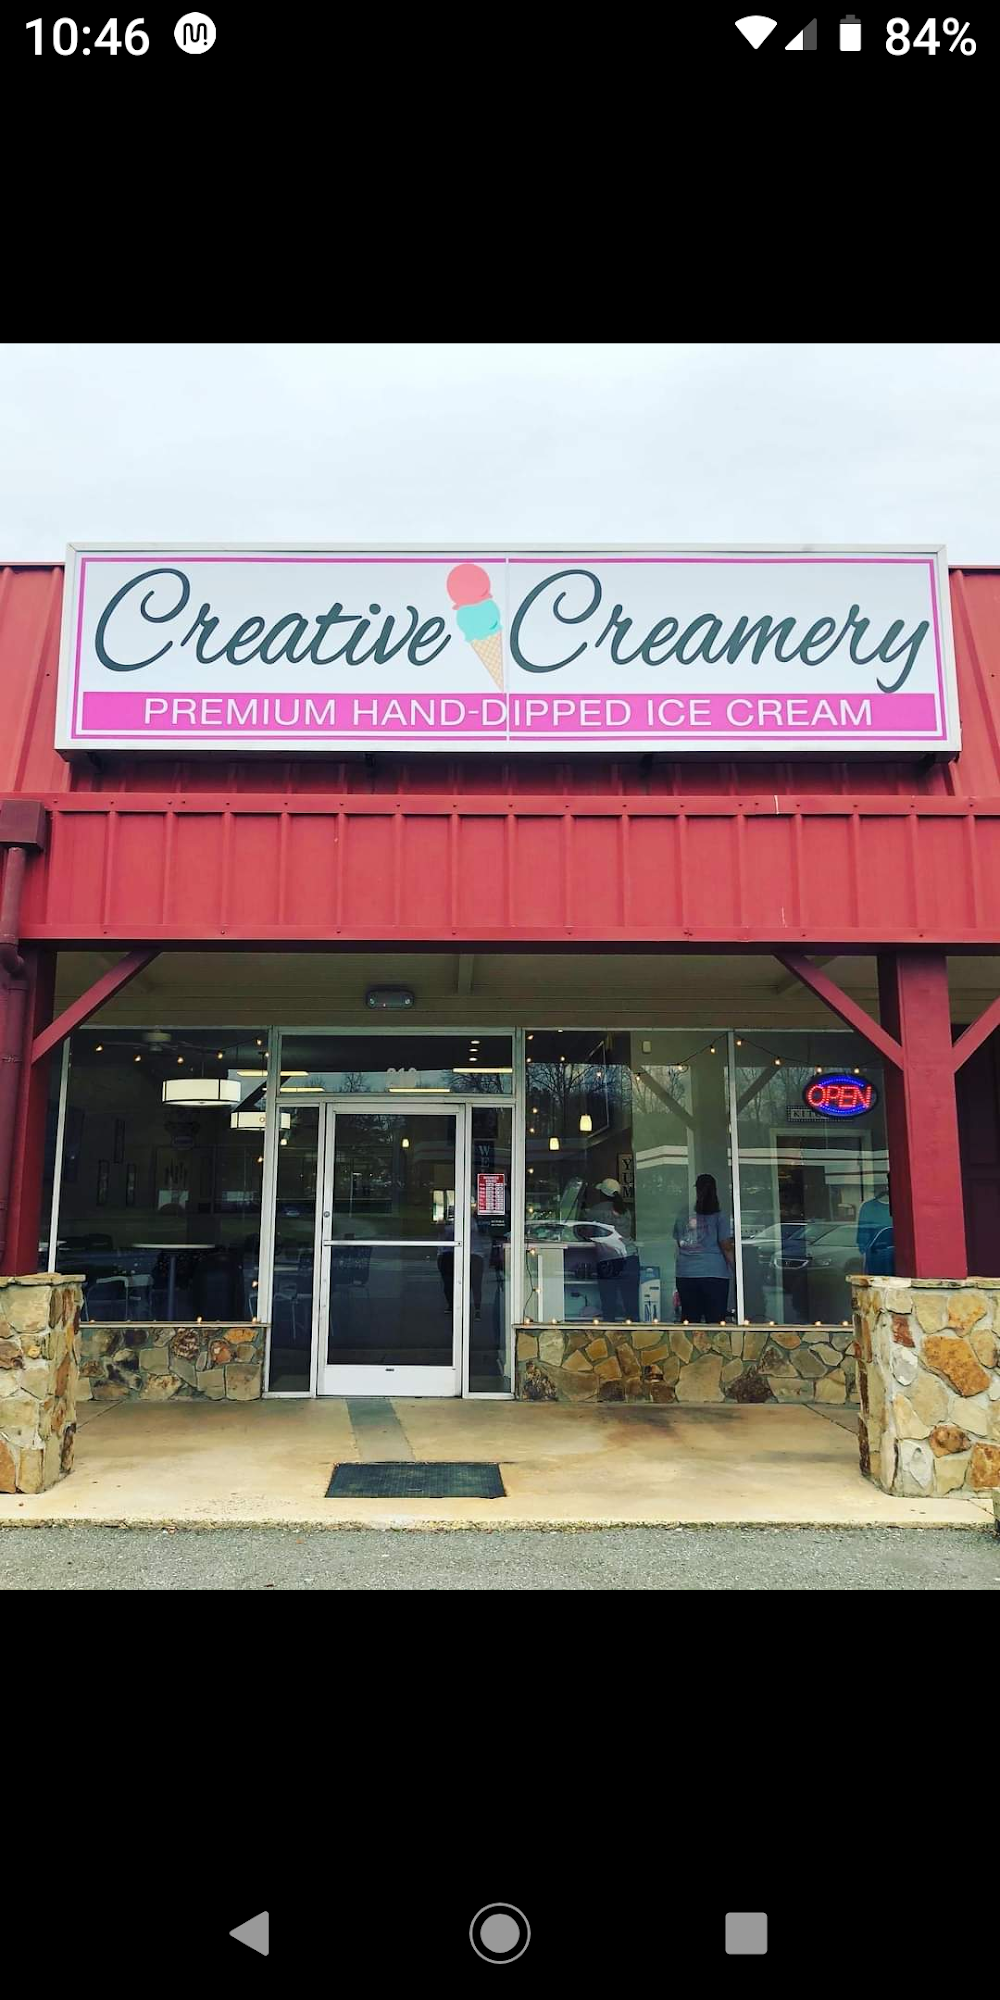 Creative Creamery